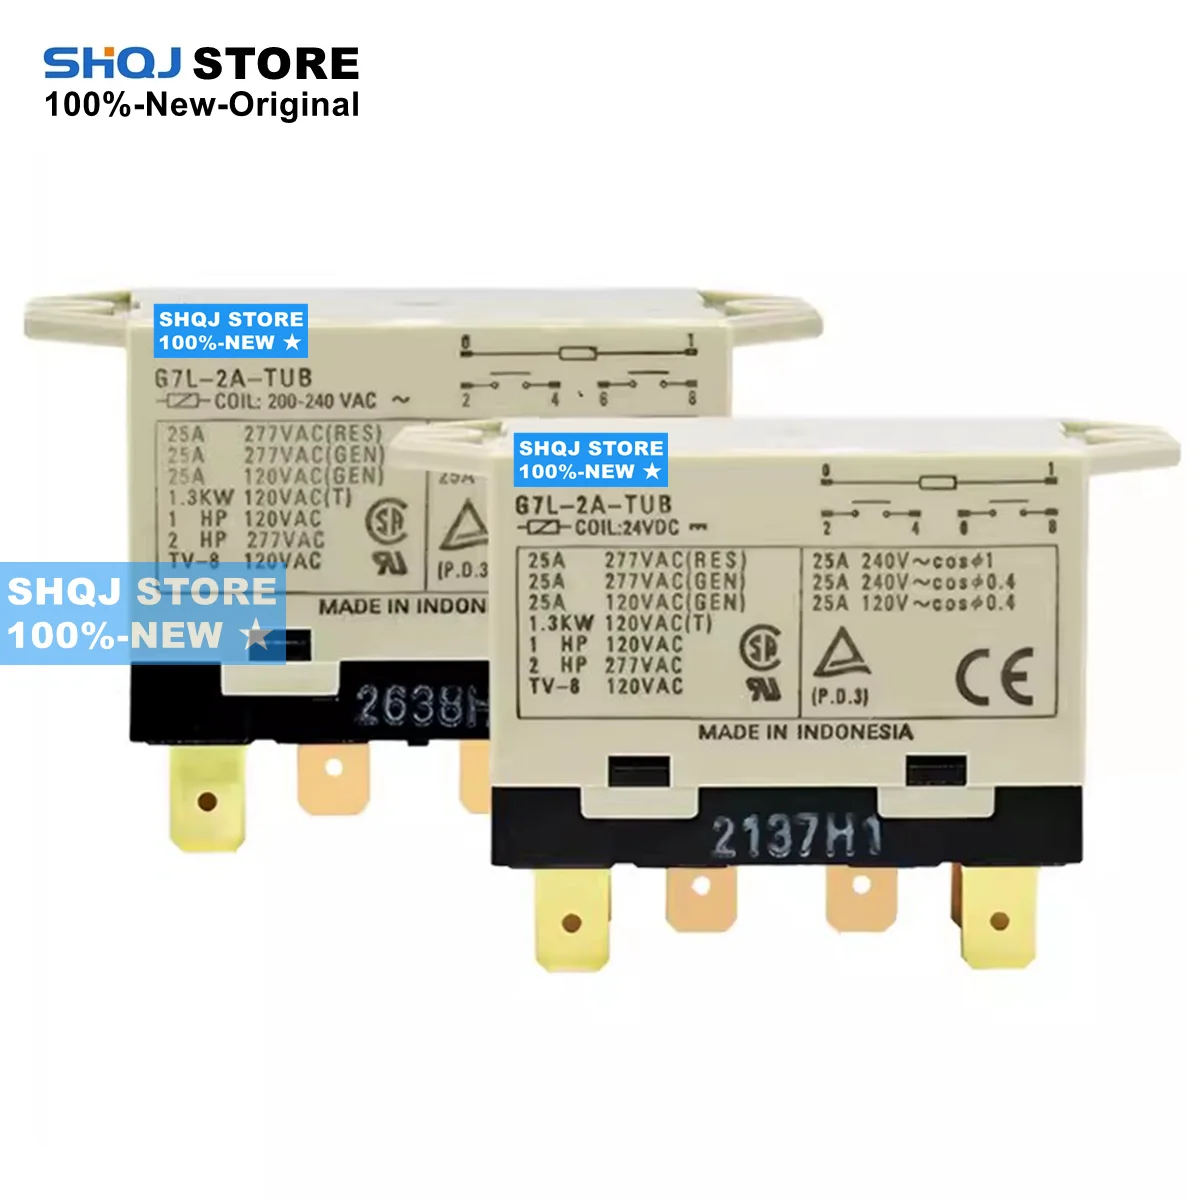 

SHQJ STORE 100%-NEW 1PCS G7L-2A-TUB 24VDC 200-240VAC RELAY Original